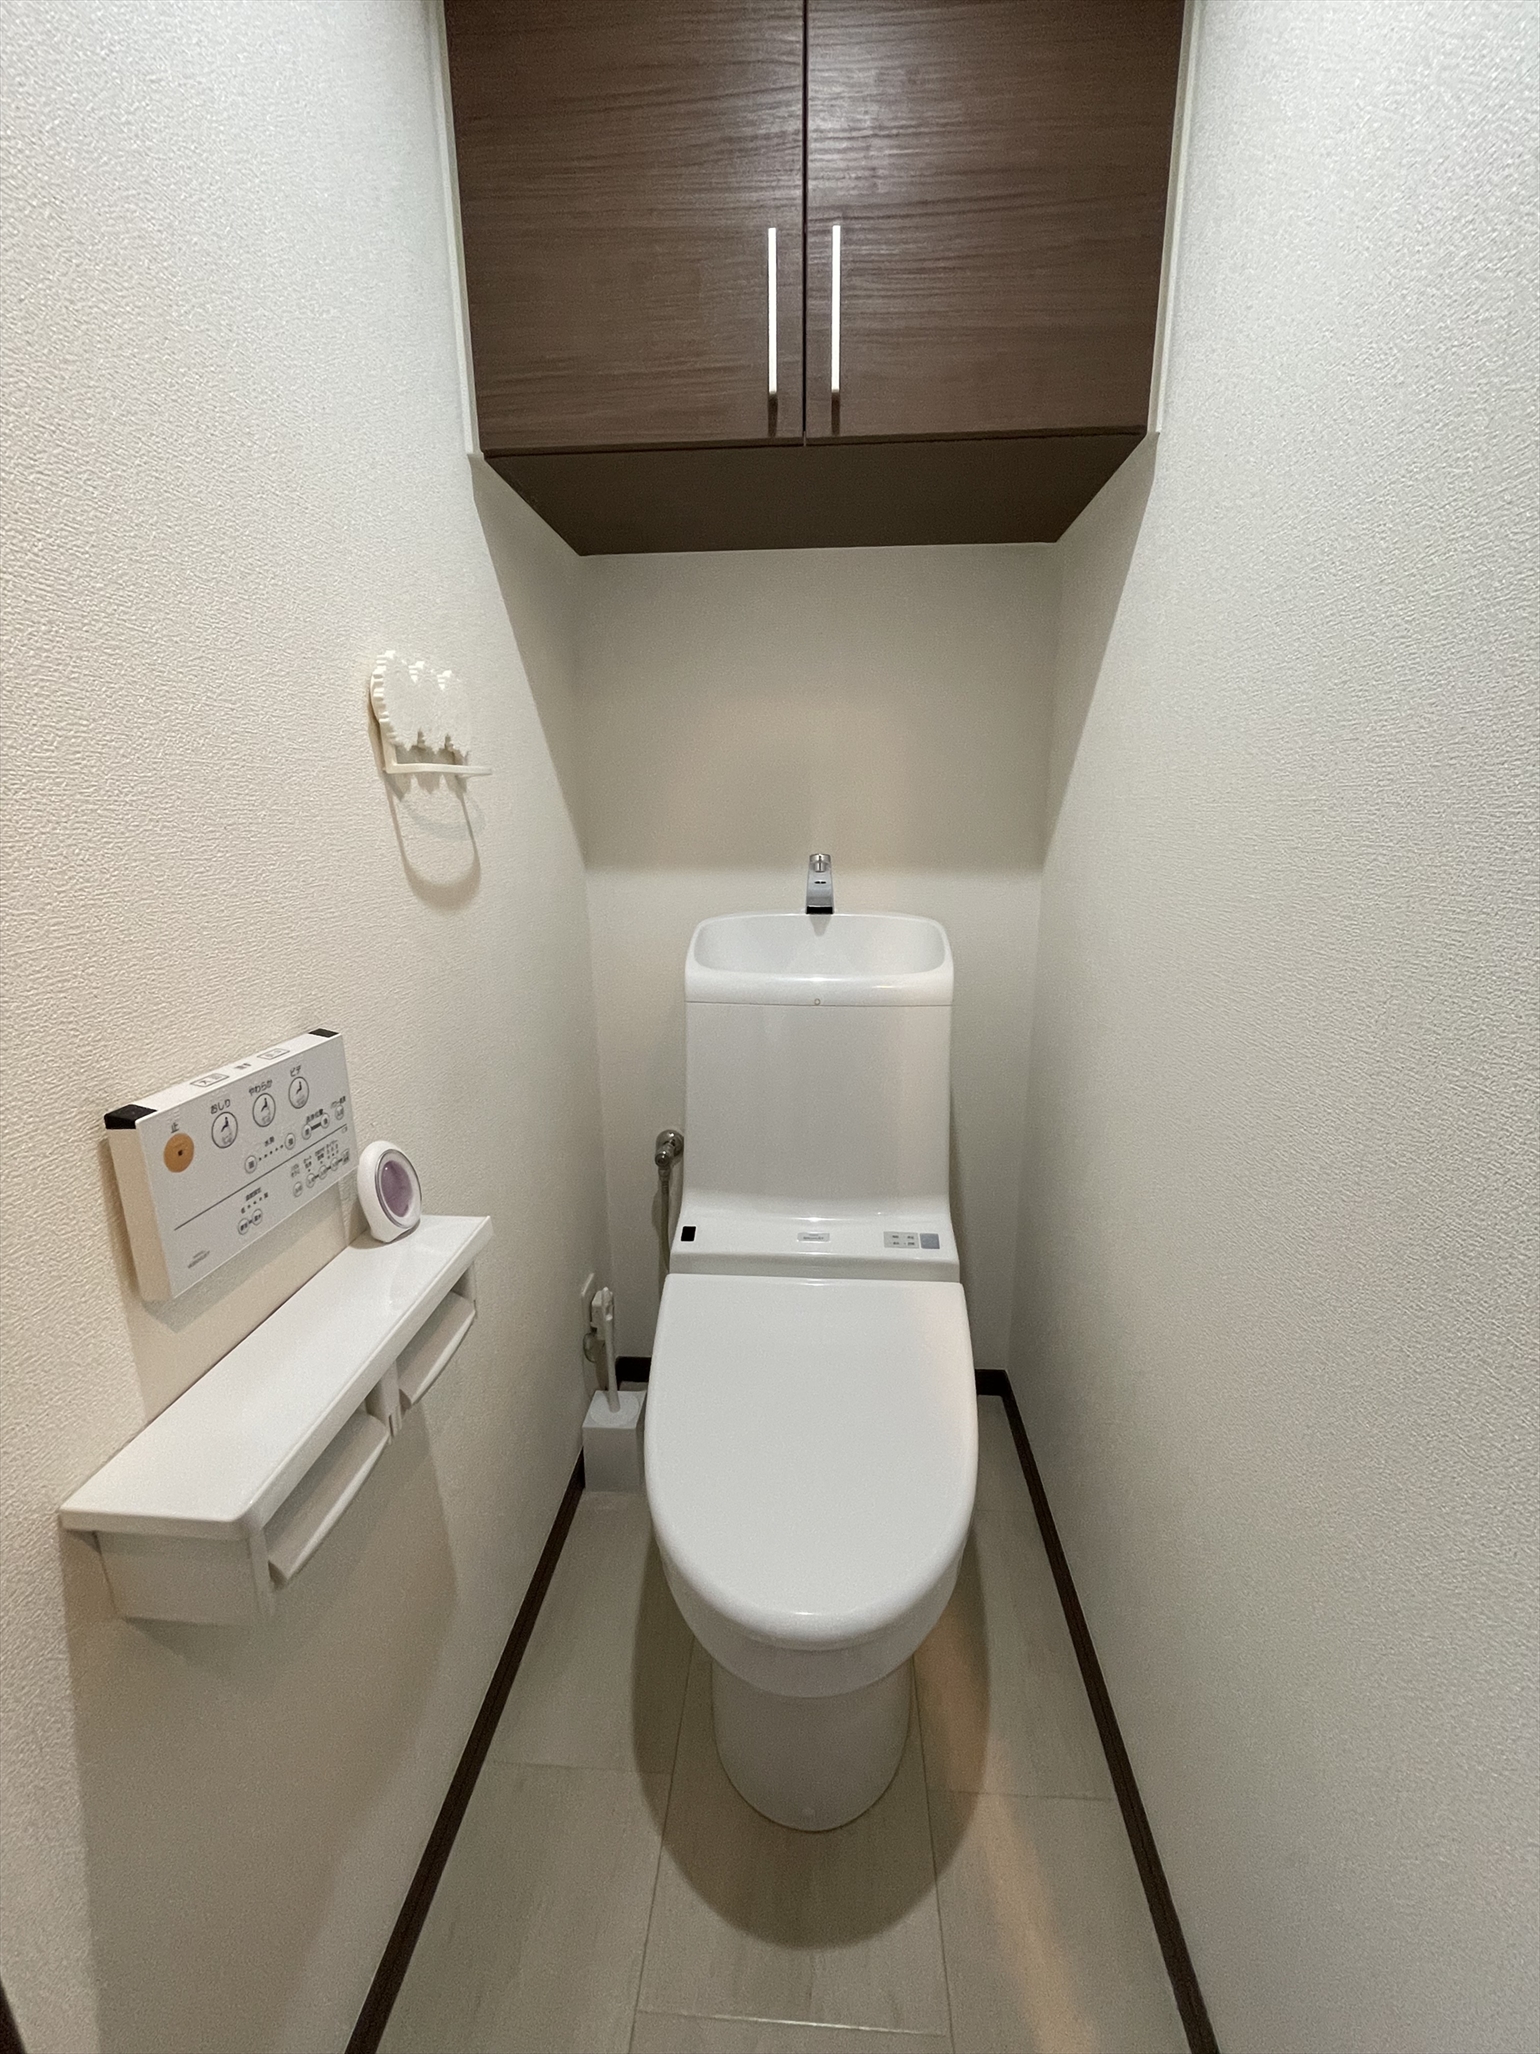 清潔感のあるトイレ。ストック用品や清掃用品も収納できる戸棚付き。(2022年5月)